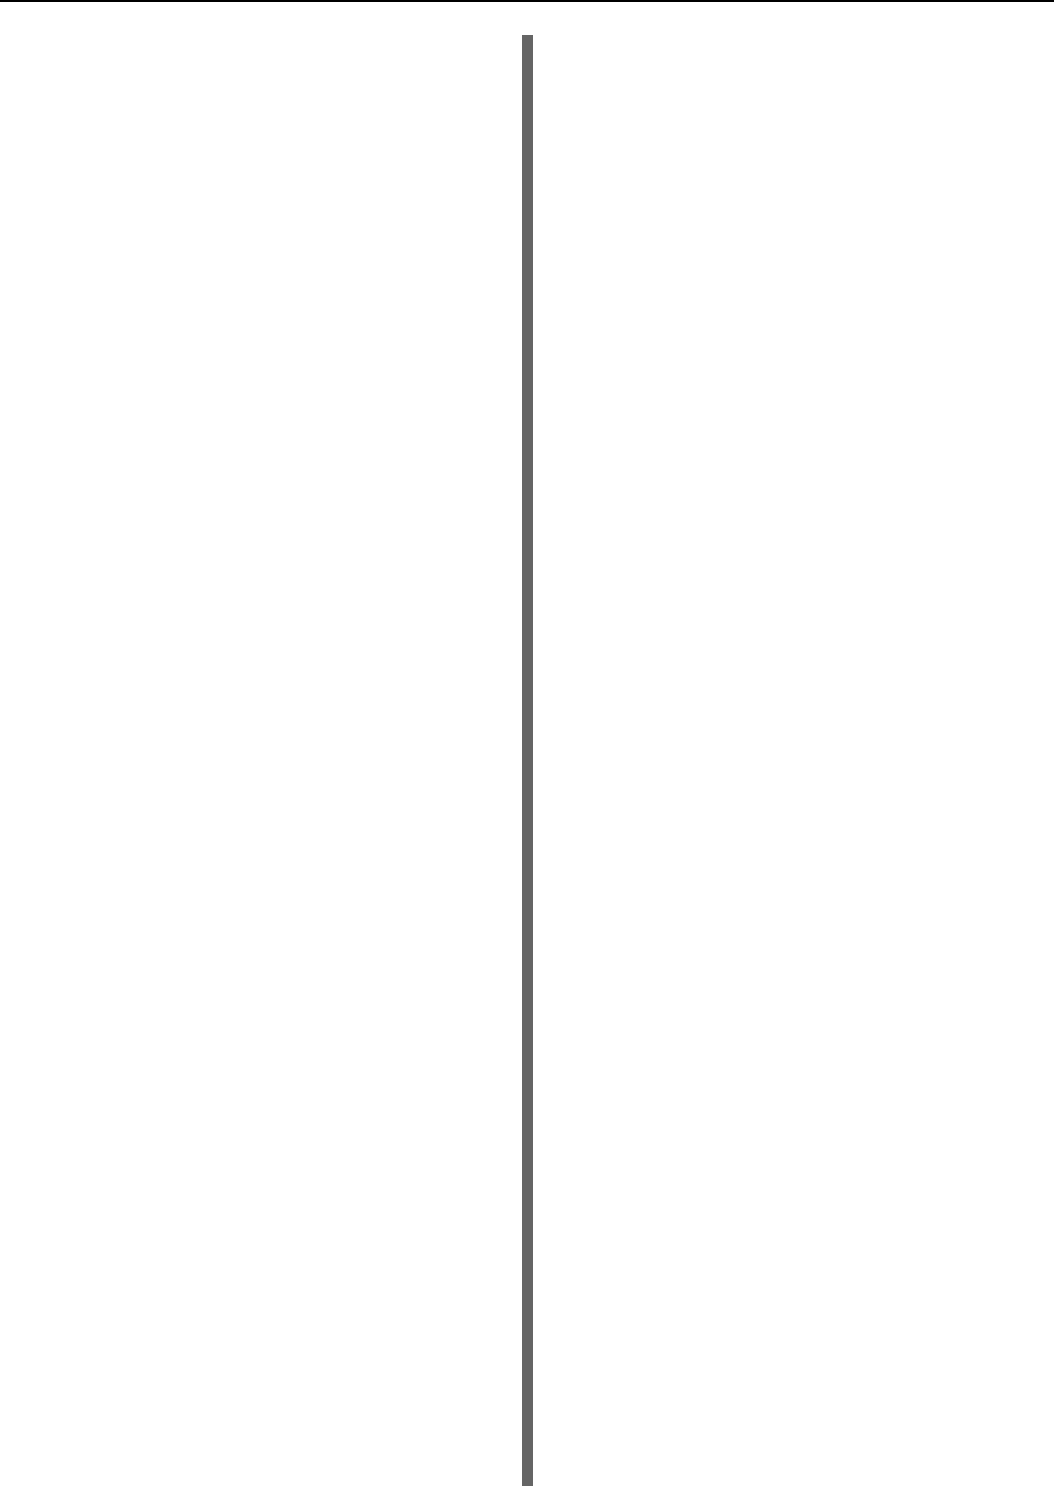 Вертикальная линия html. Вертикальные полосы. Черная линия вертикальная. Прямая вертикальная линия. Белая полоска вертикальная.